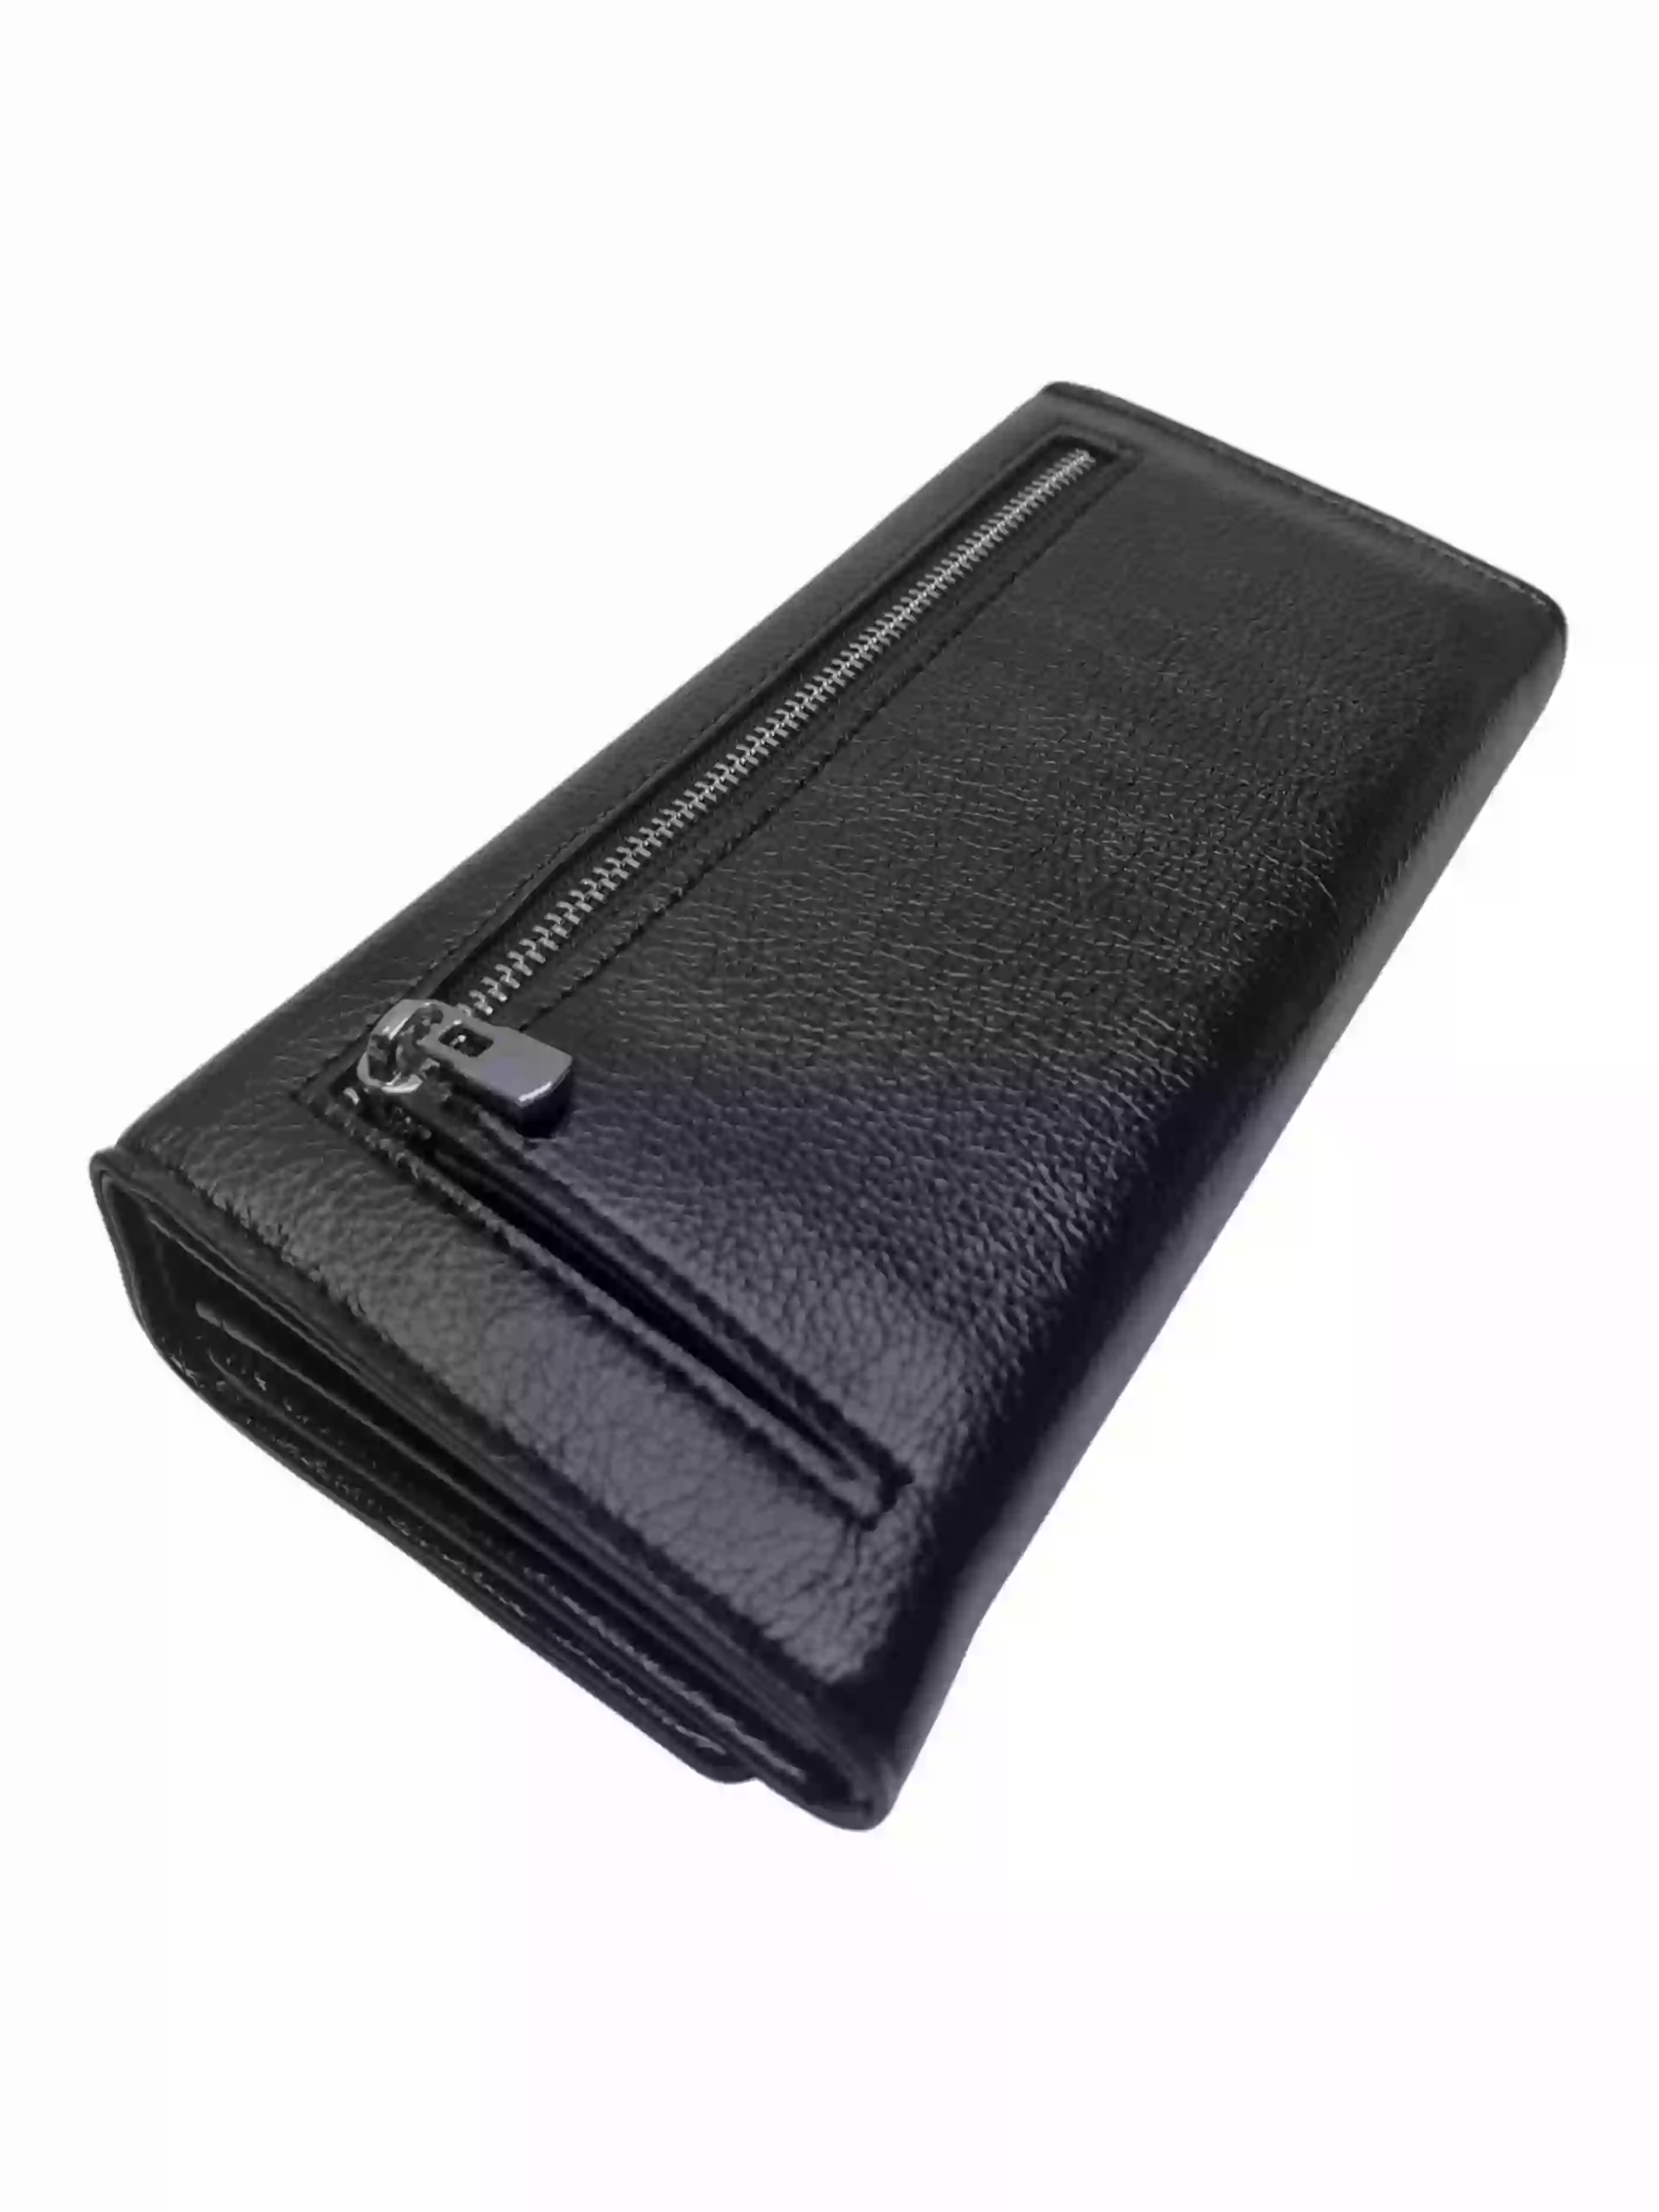 Moderní černá dámská peněženka na magnetky, New Berry, 0925-5, zadní strana peněženky